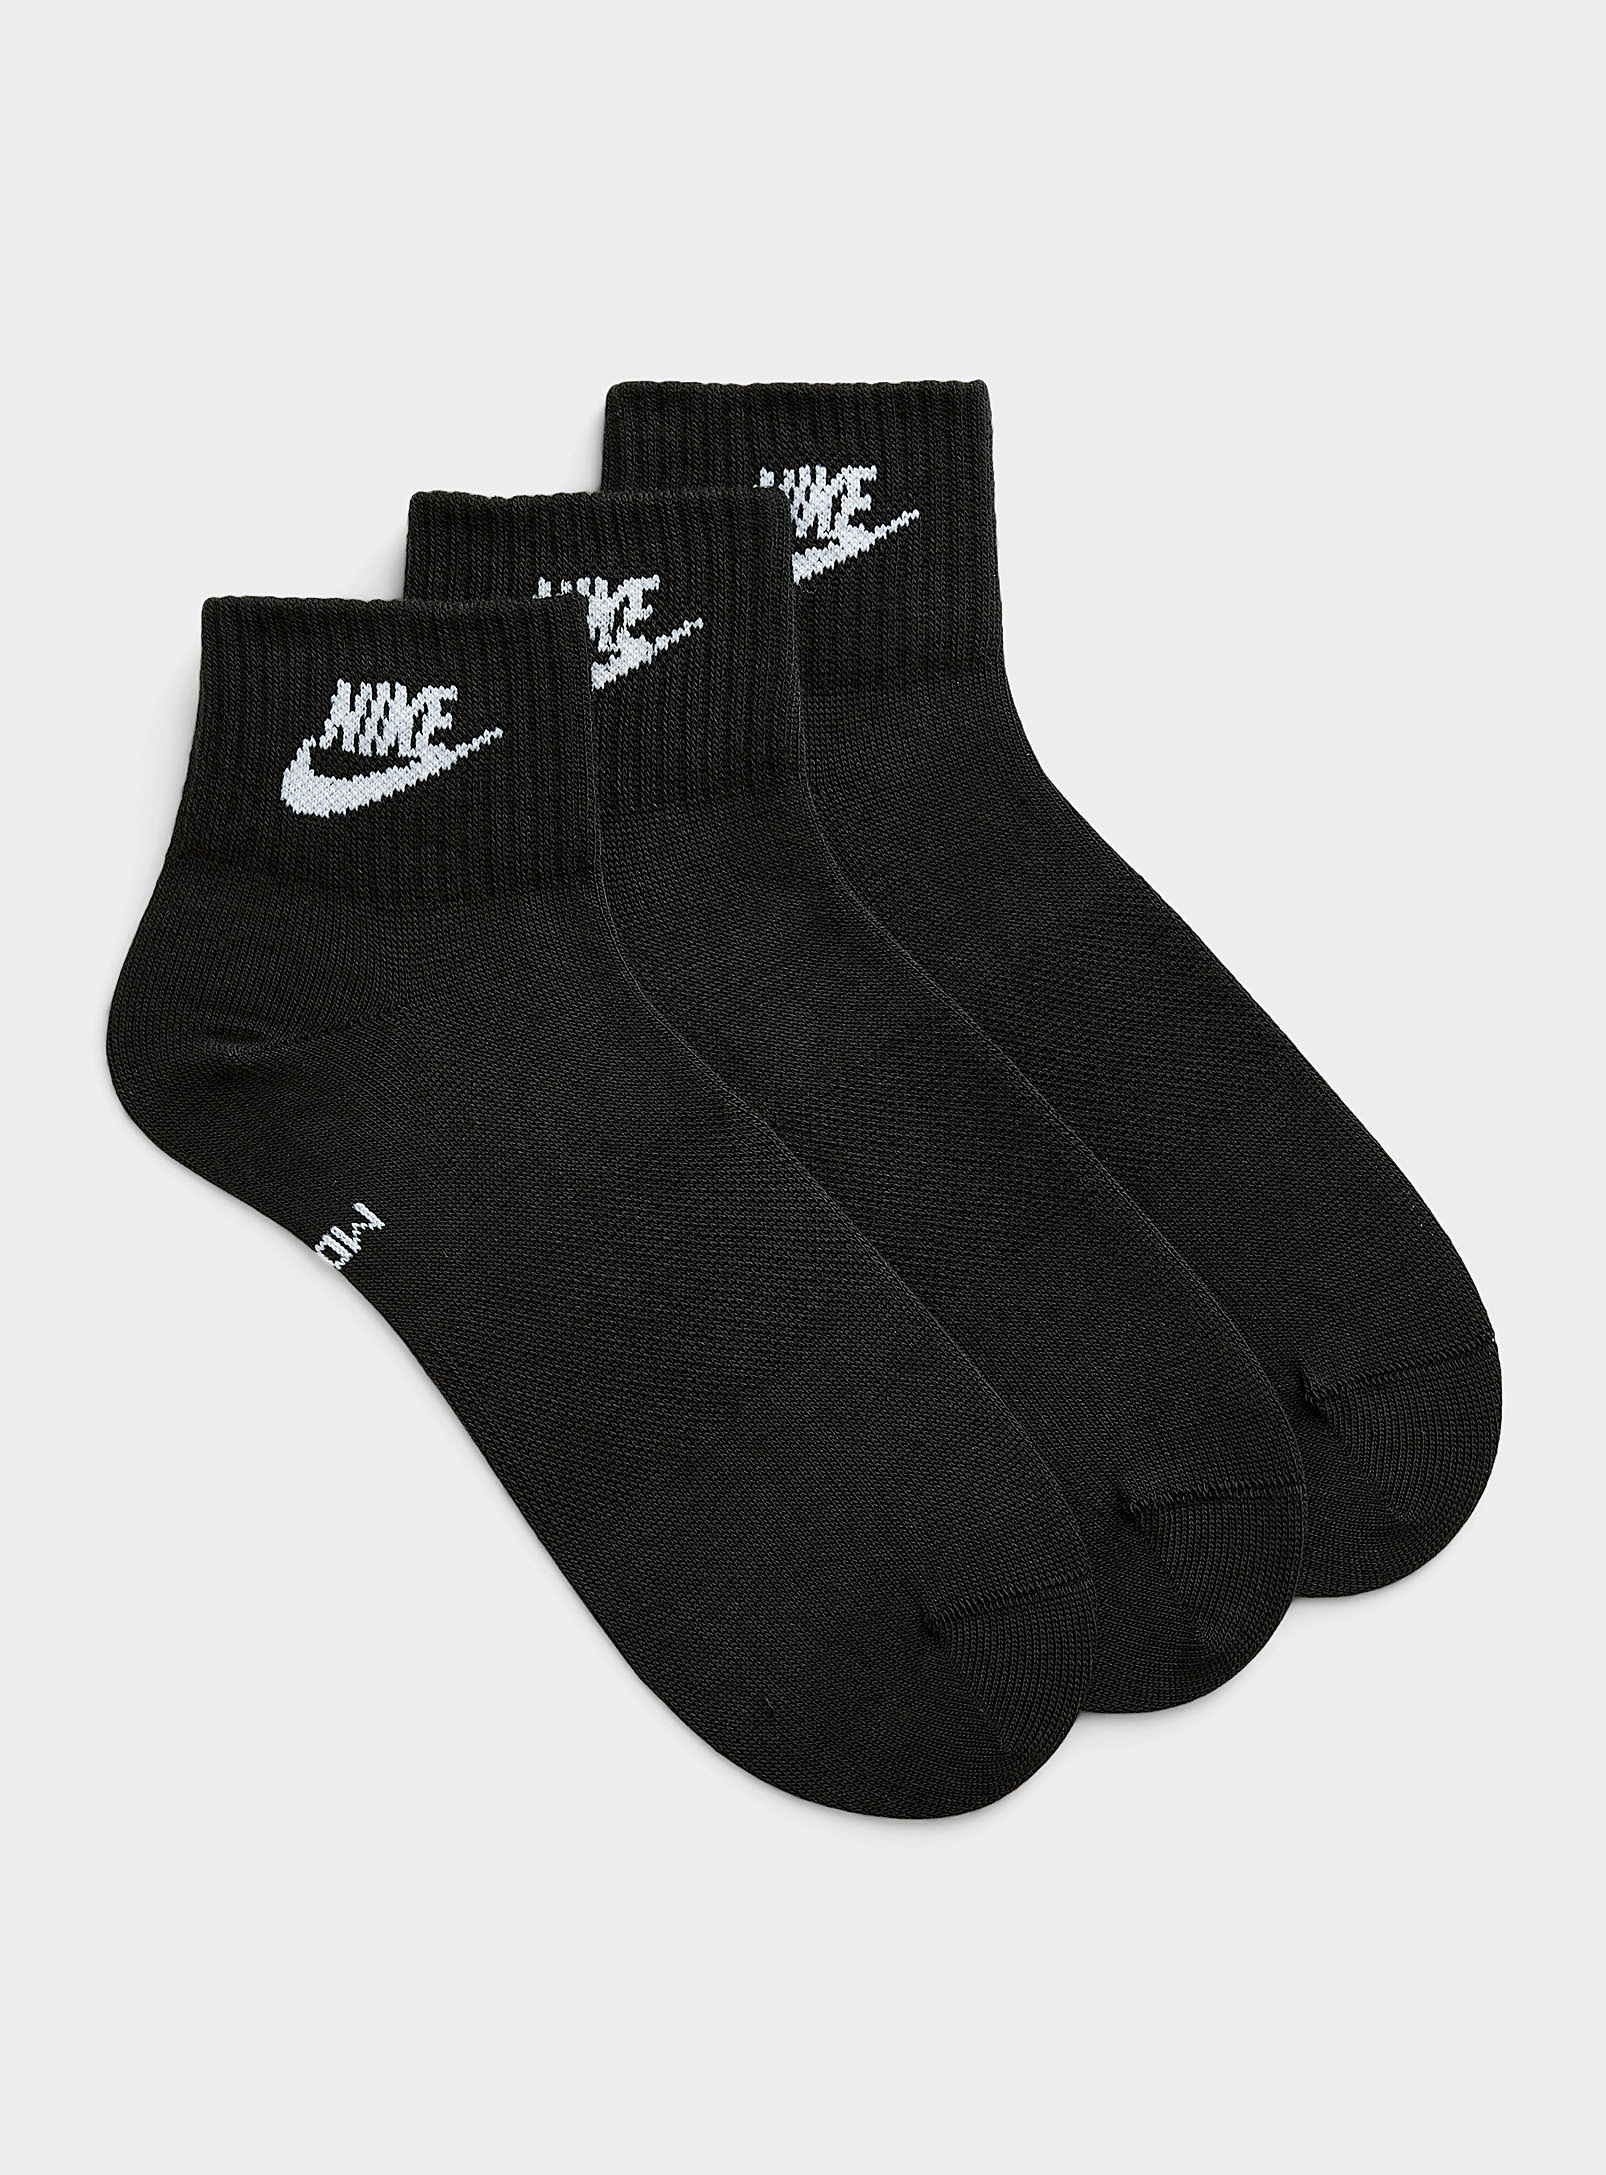 Nike Everyday Essential Socks Set Of 3 In Black